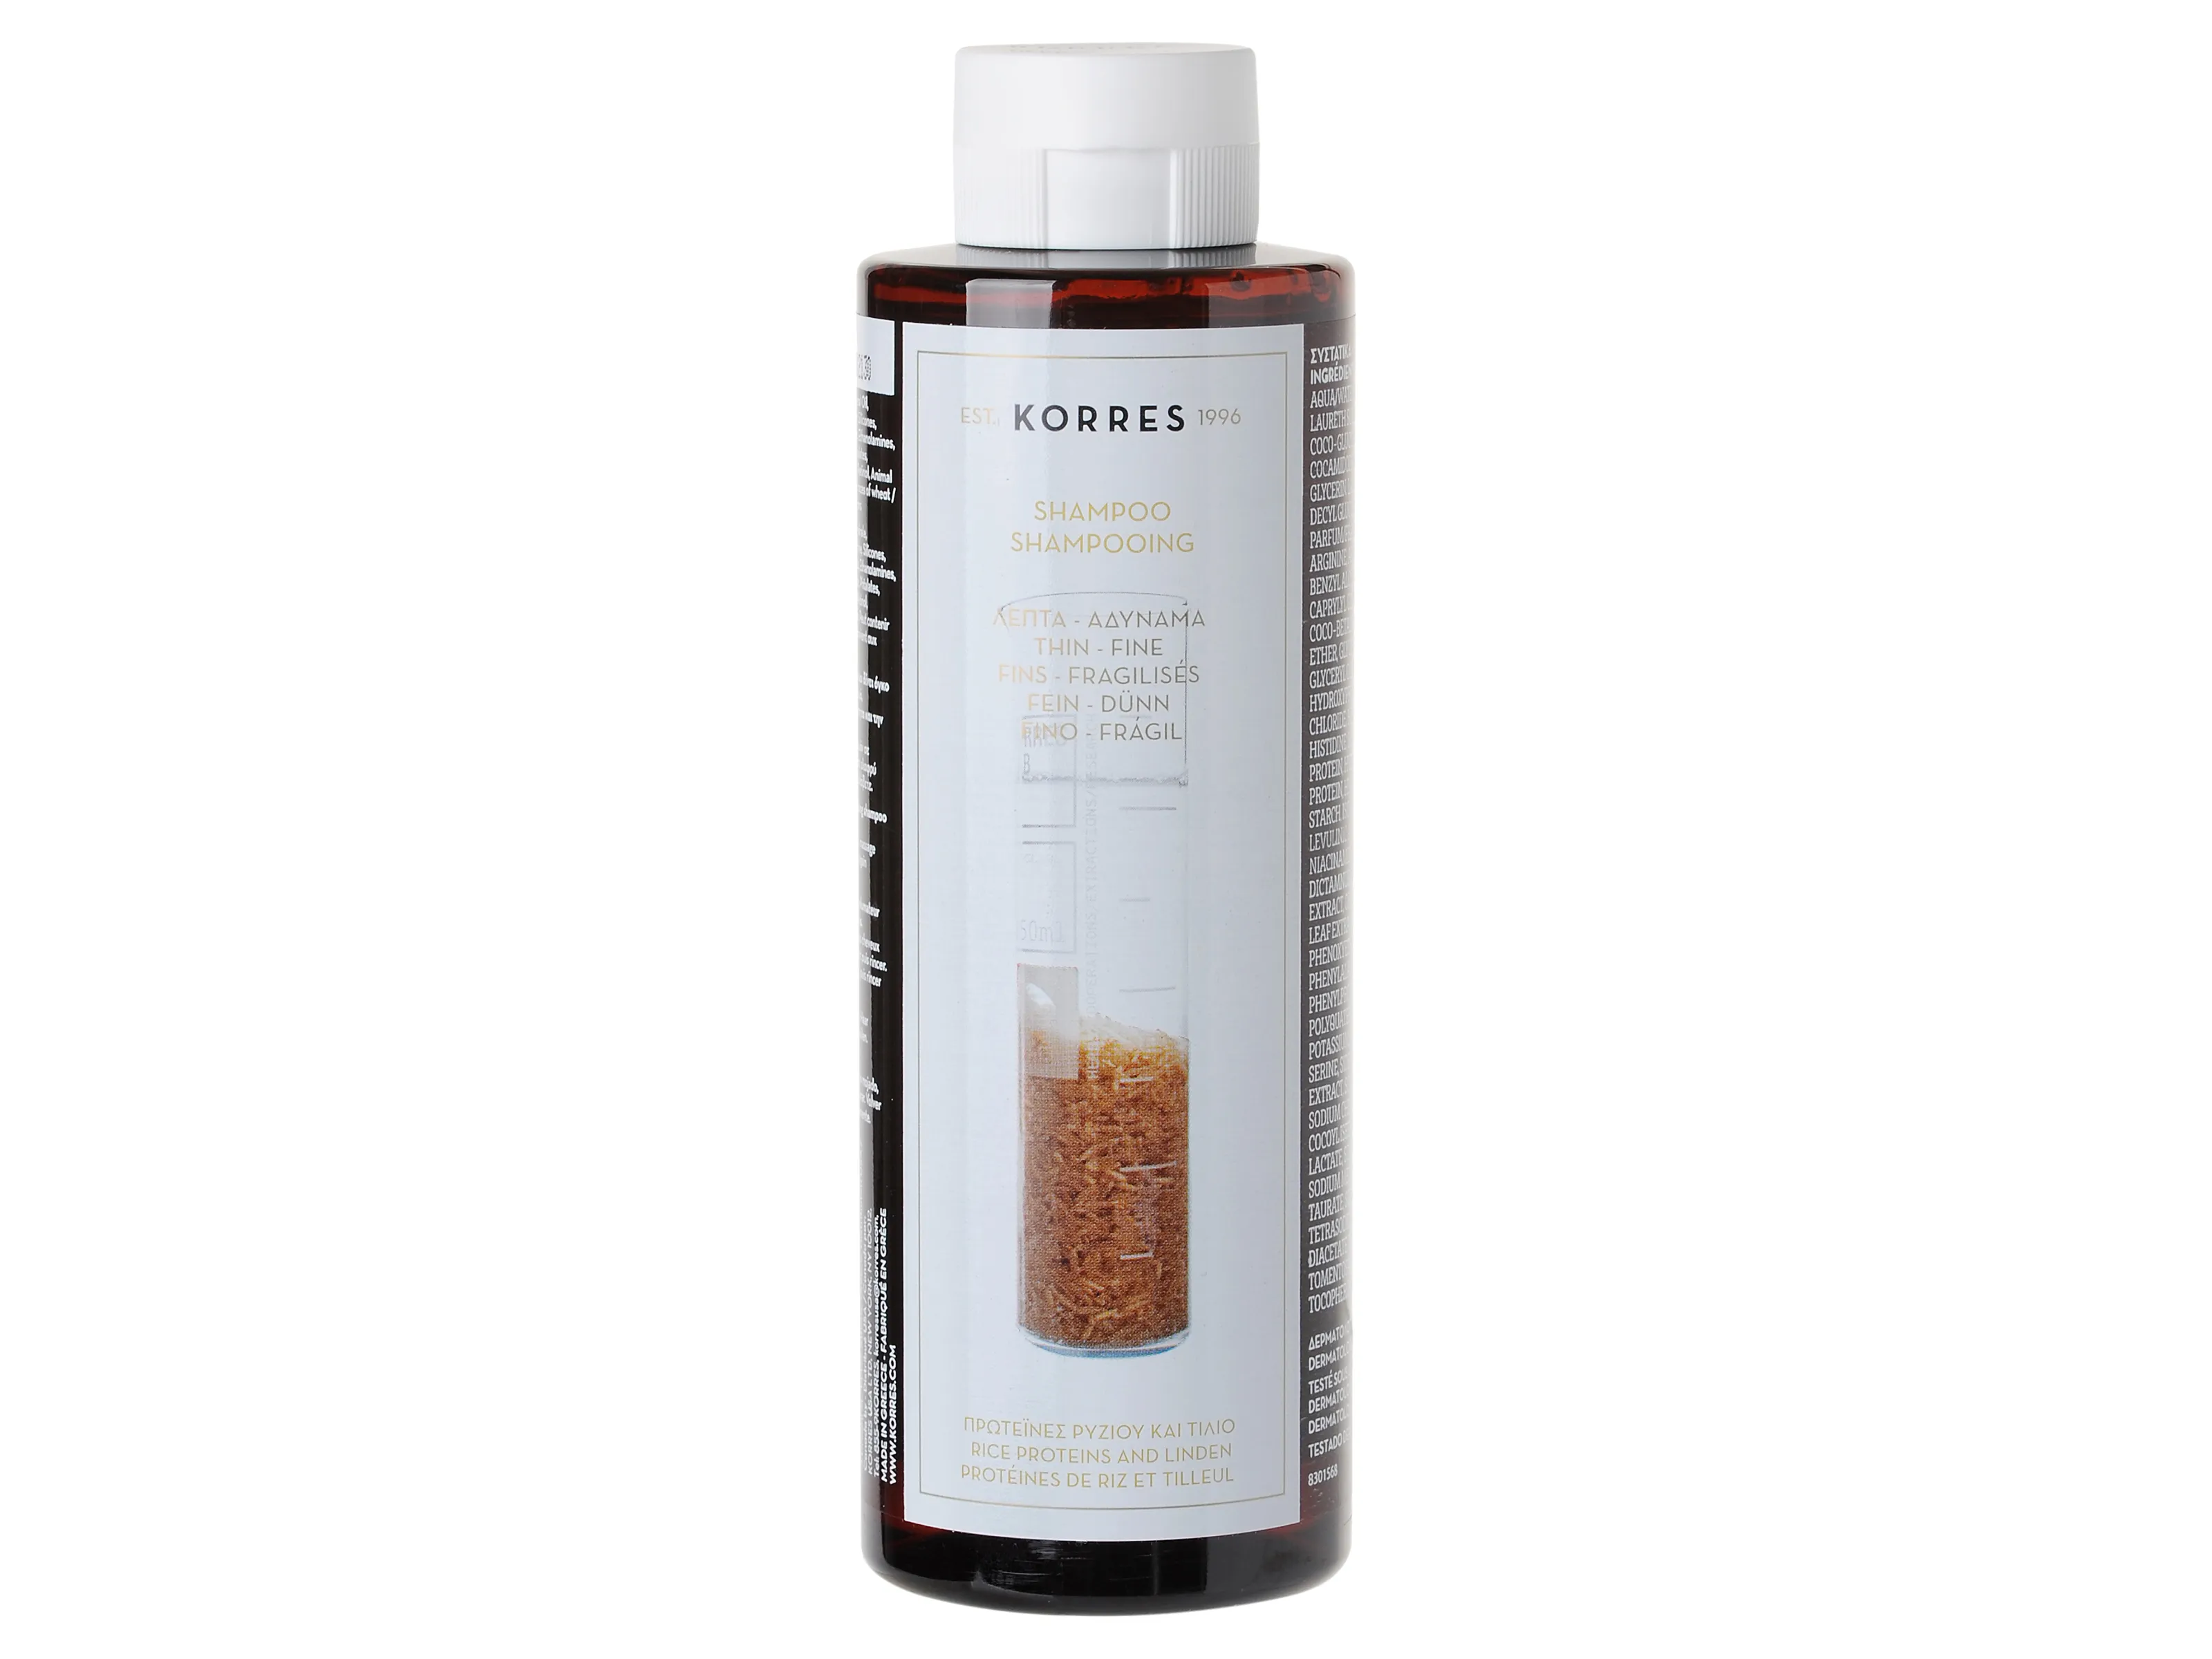 Korres szampon z proteinami ryżu i wyciągiem z lipy do włosów cienkich, 250 ml